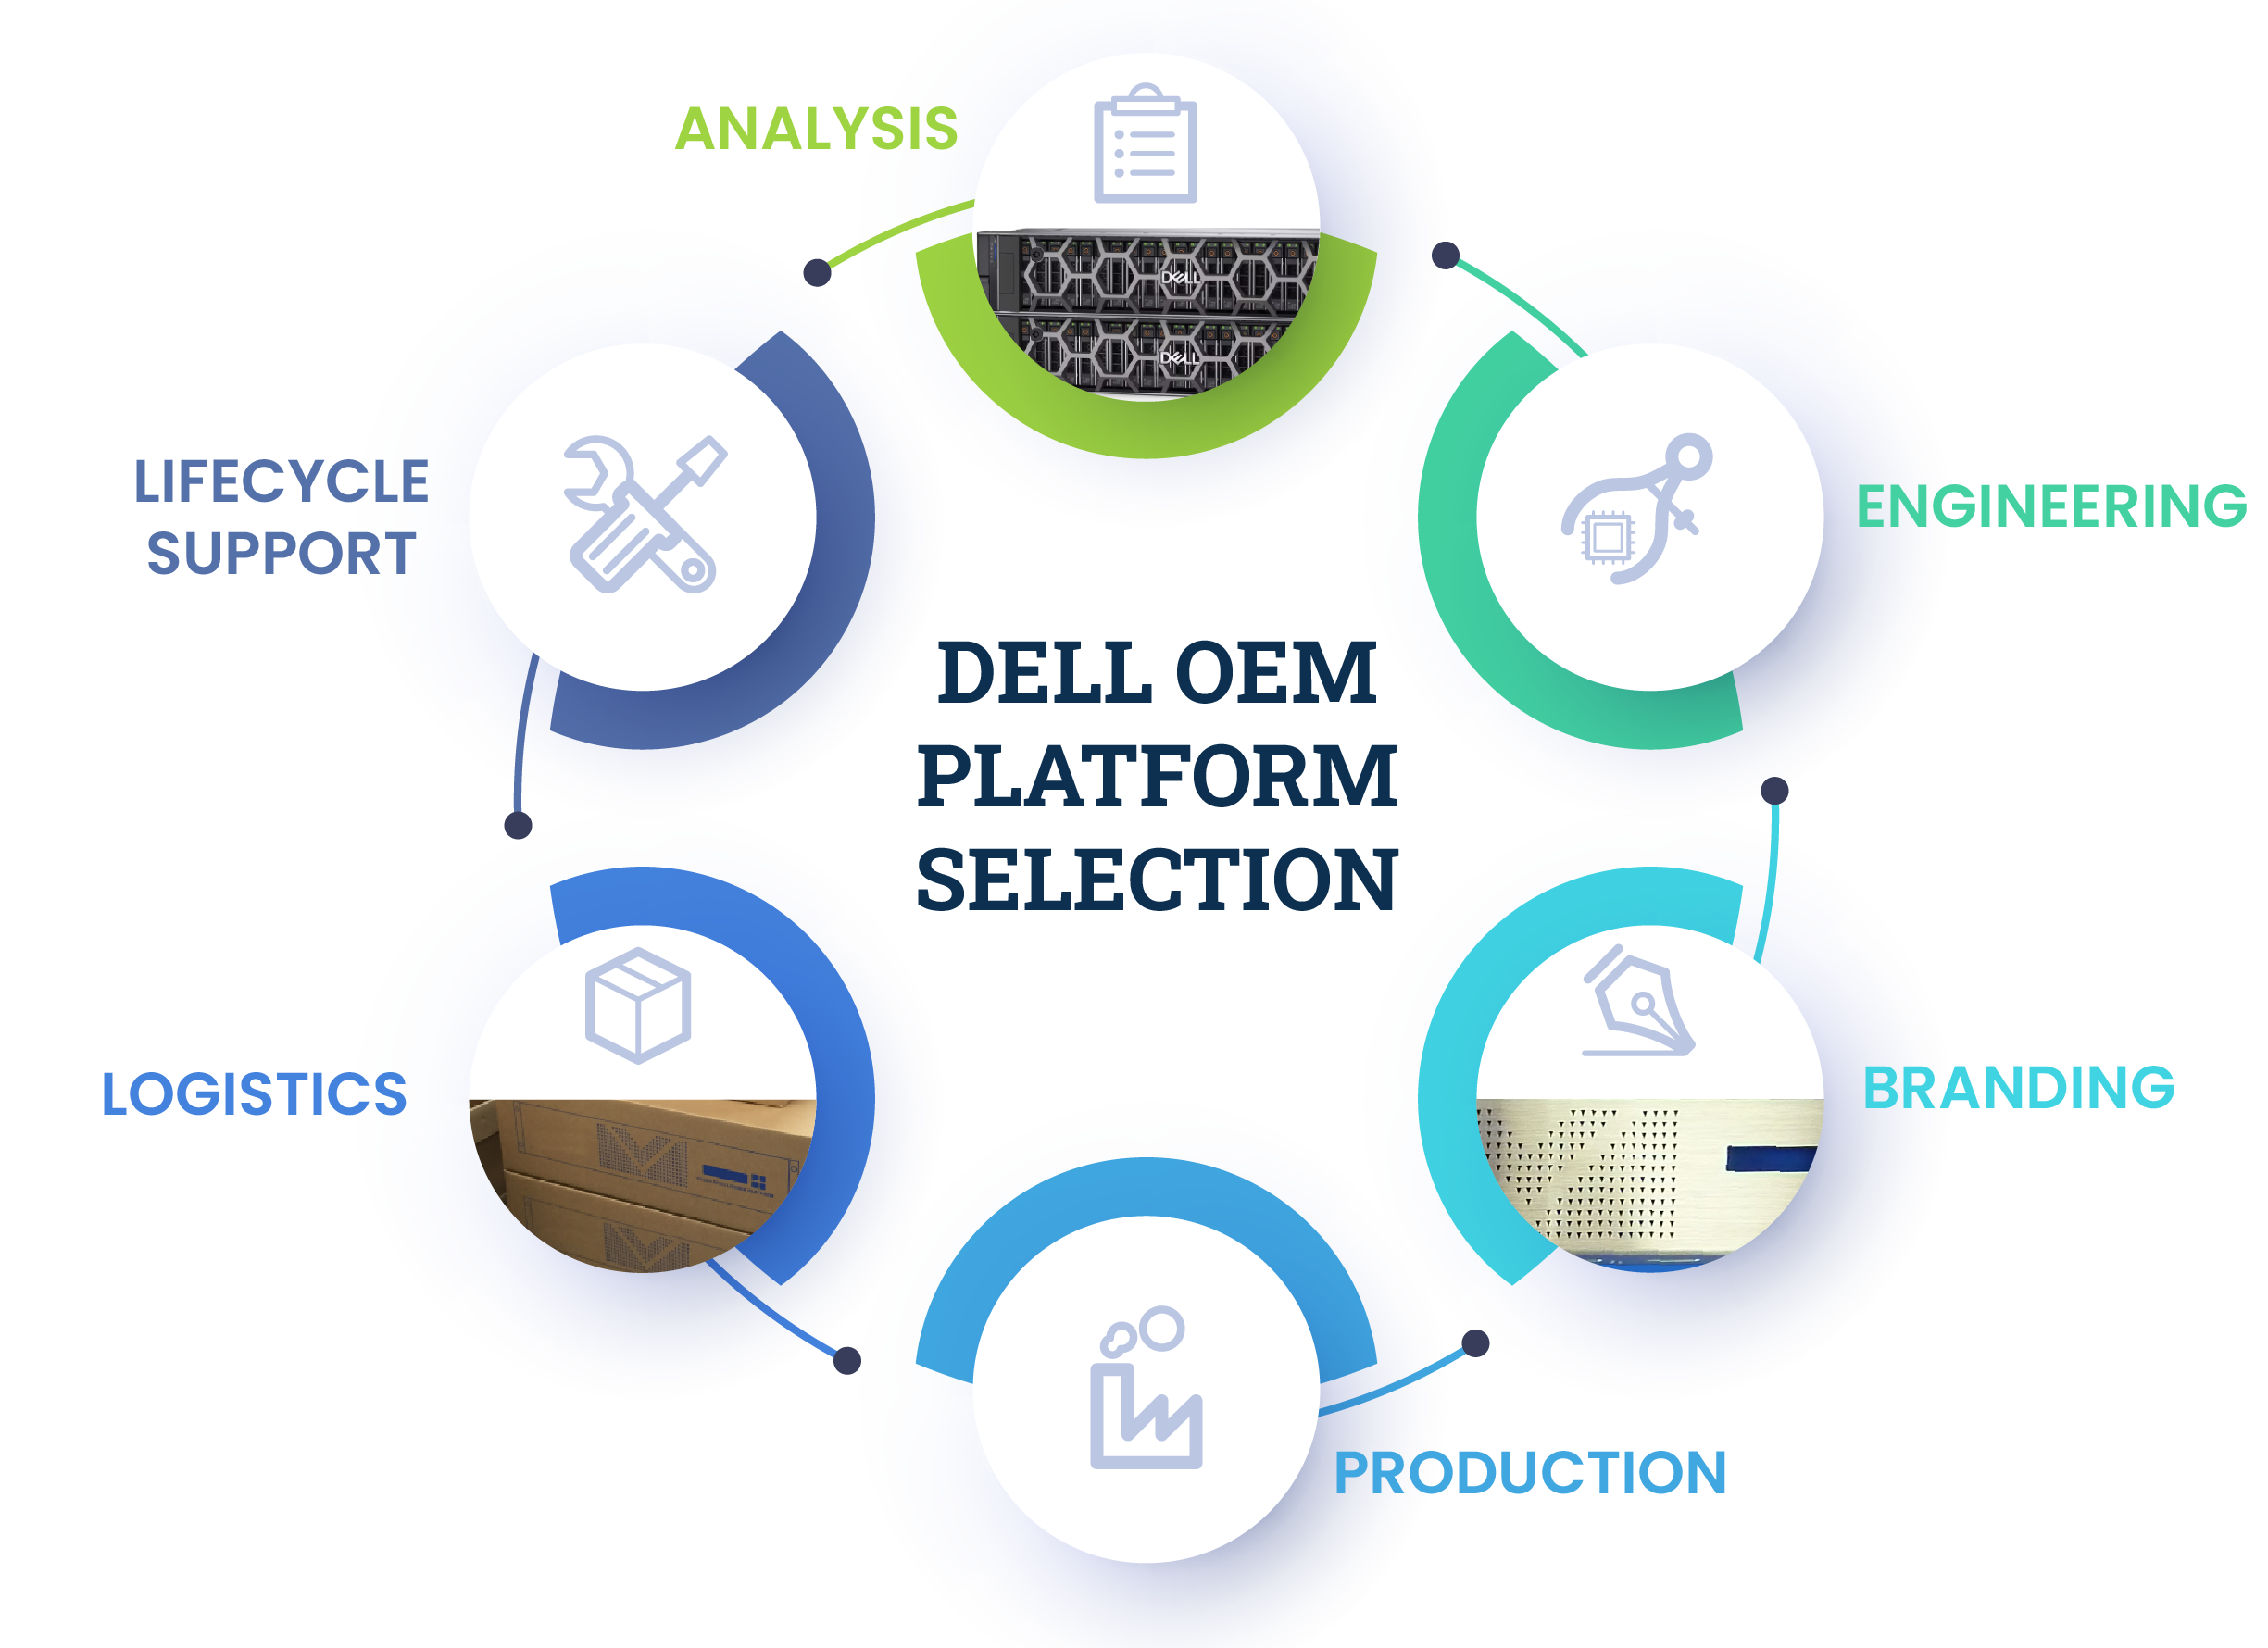 DELL OEM platform selection